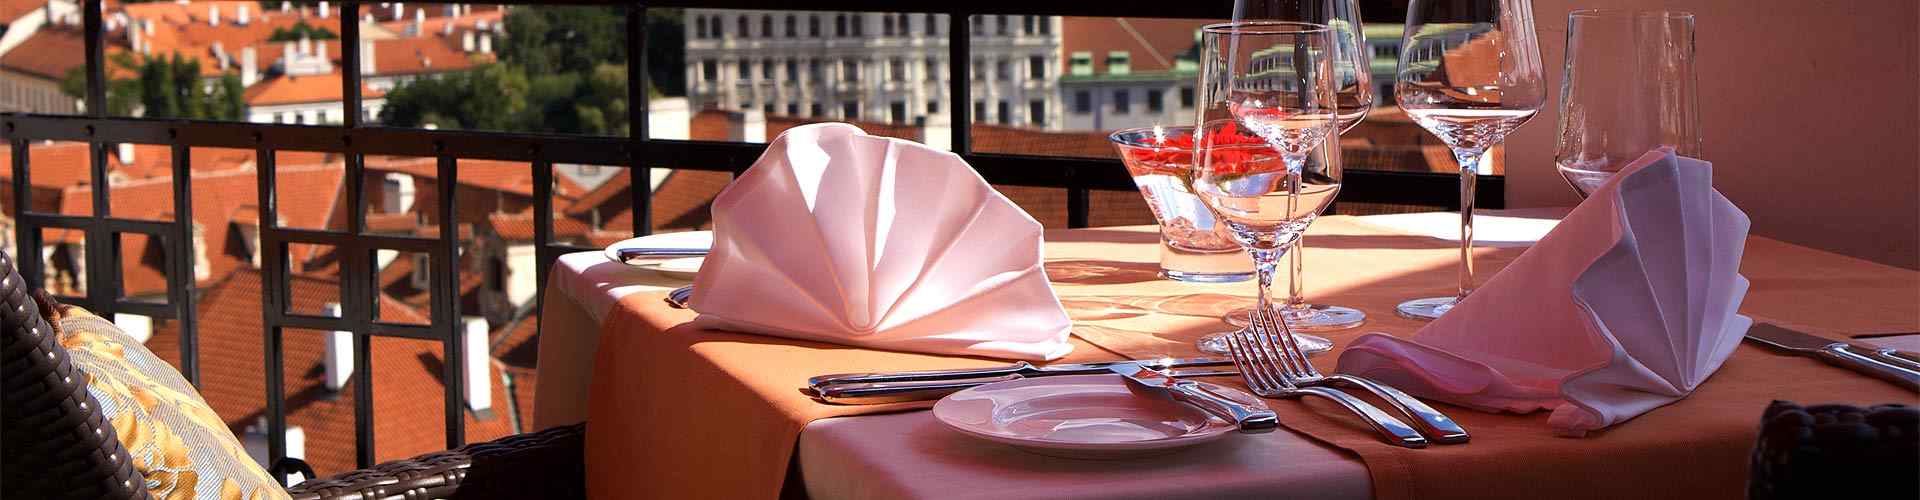 Restaurantes románticos con terraza en Carbellino
          
          
